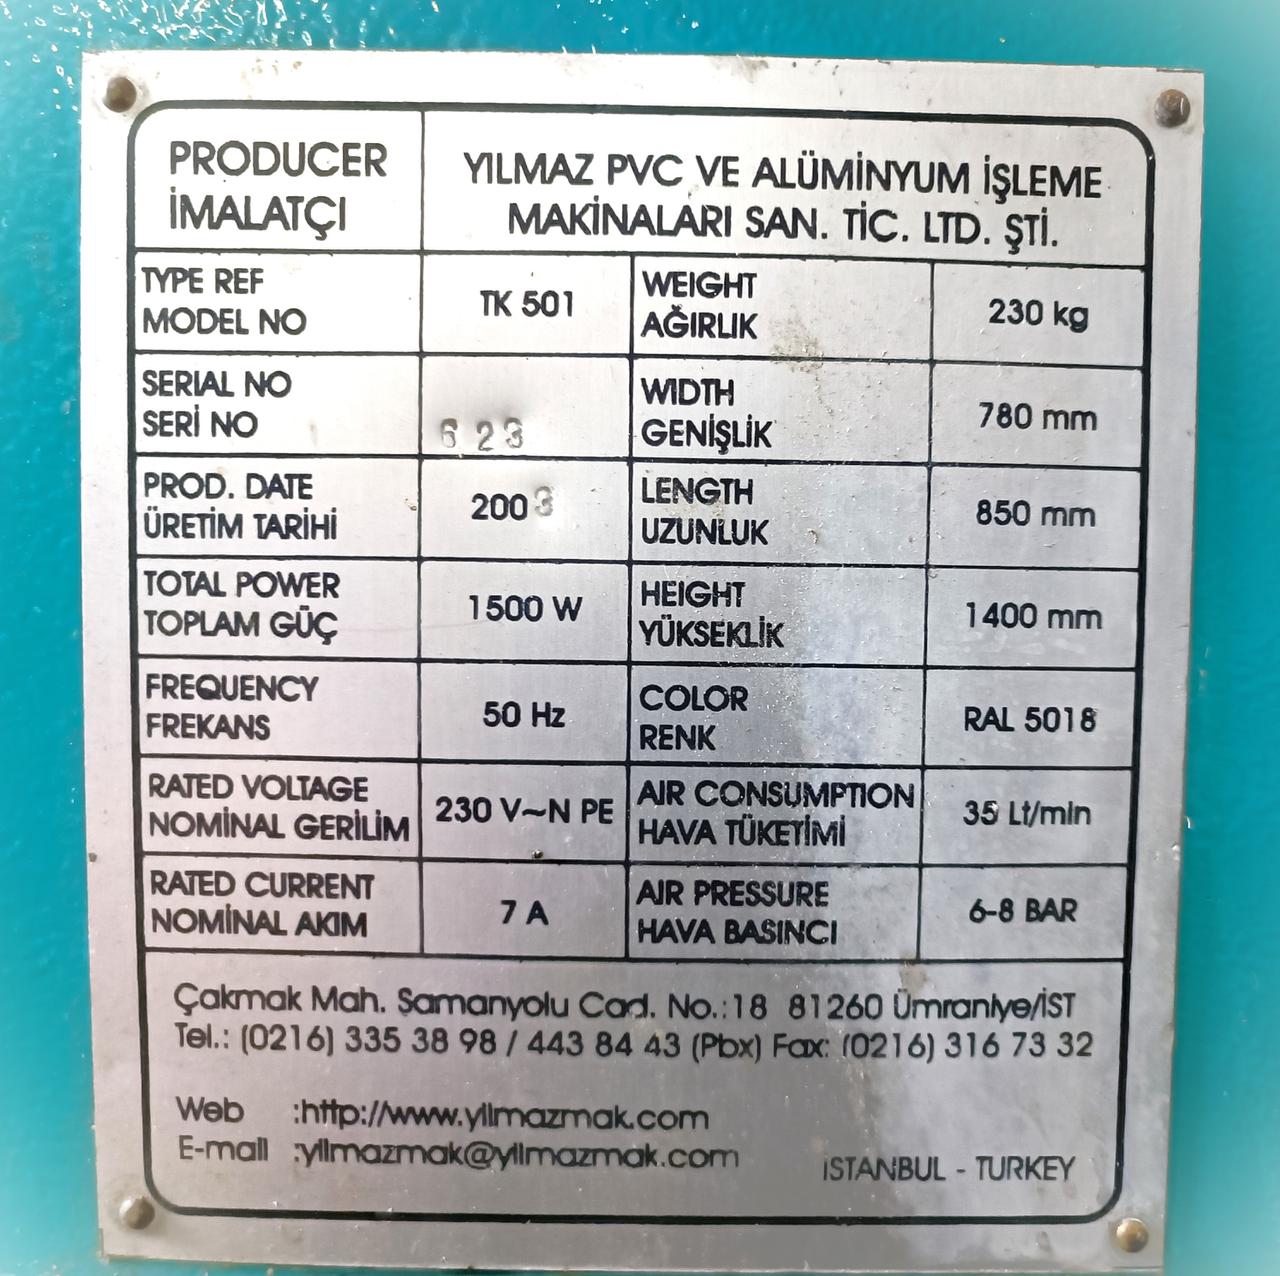 YILMAZ TK 501 Одноголовочная сварочная машина для производства пластиковых окон (Б/У оборудование)